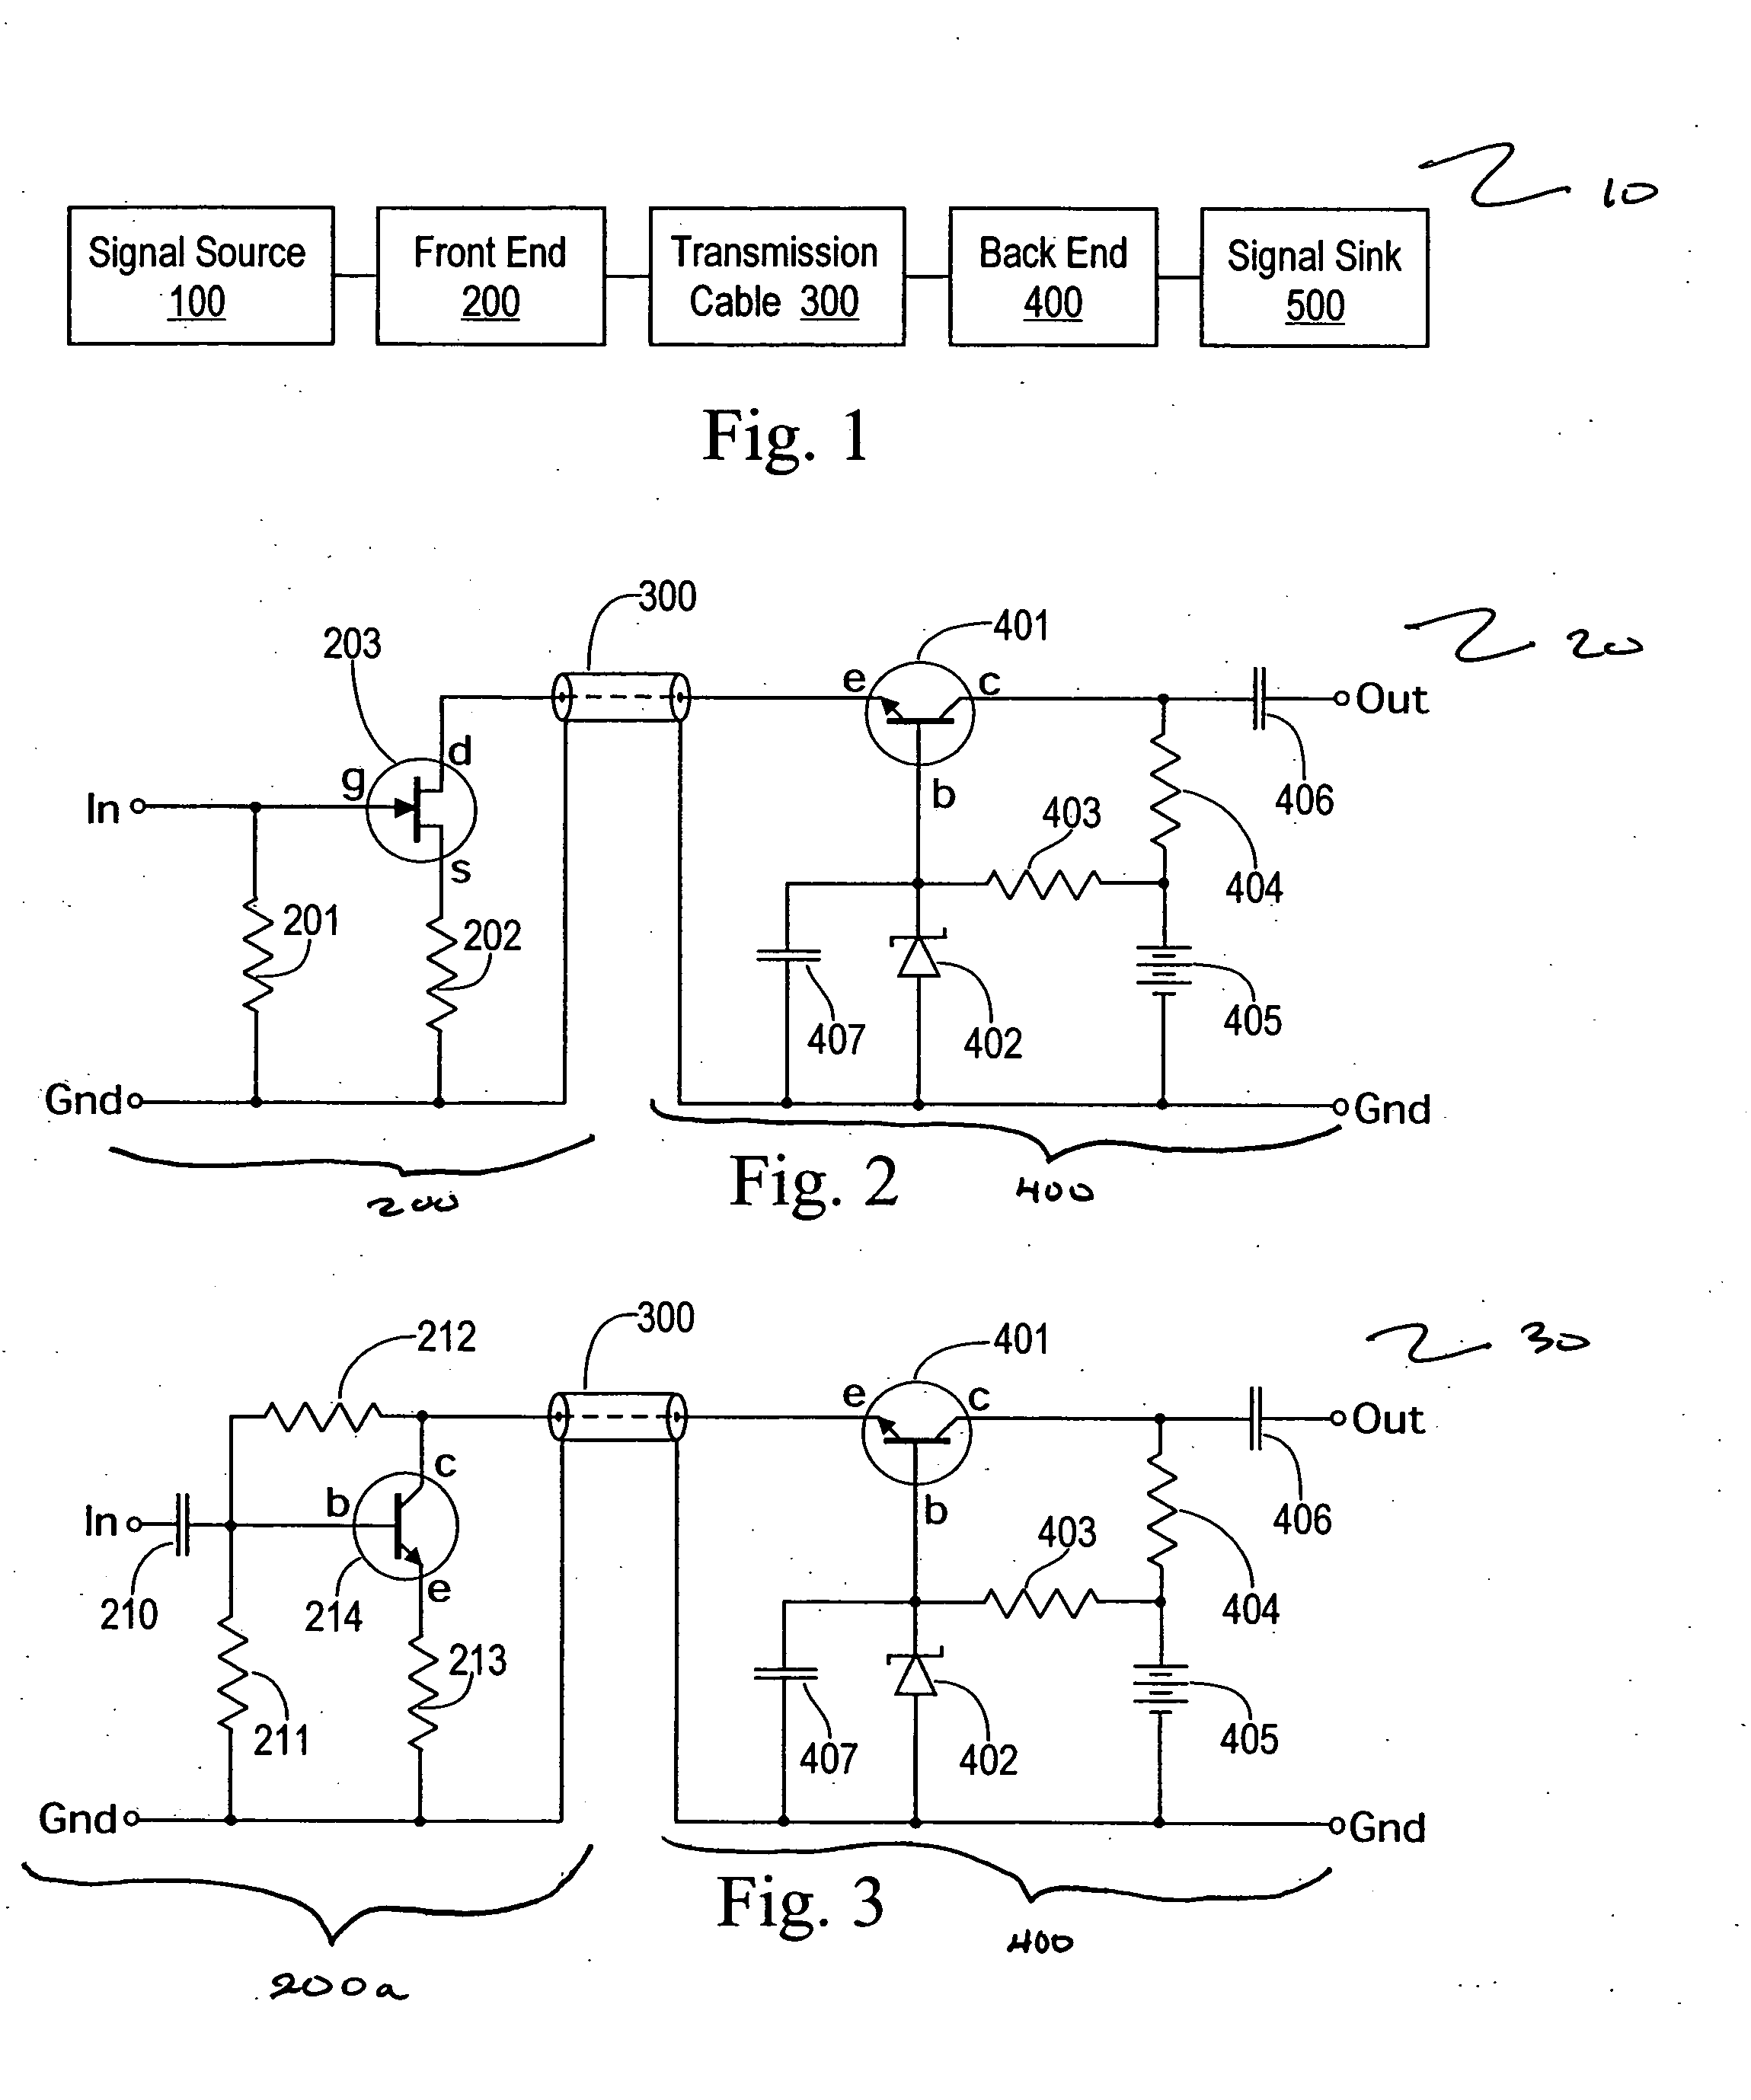 Split cascode line amplifier for current-mode signal transmission